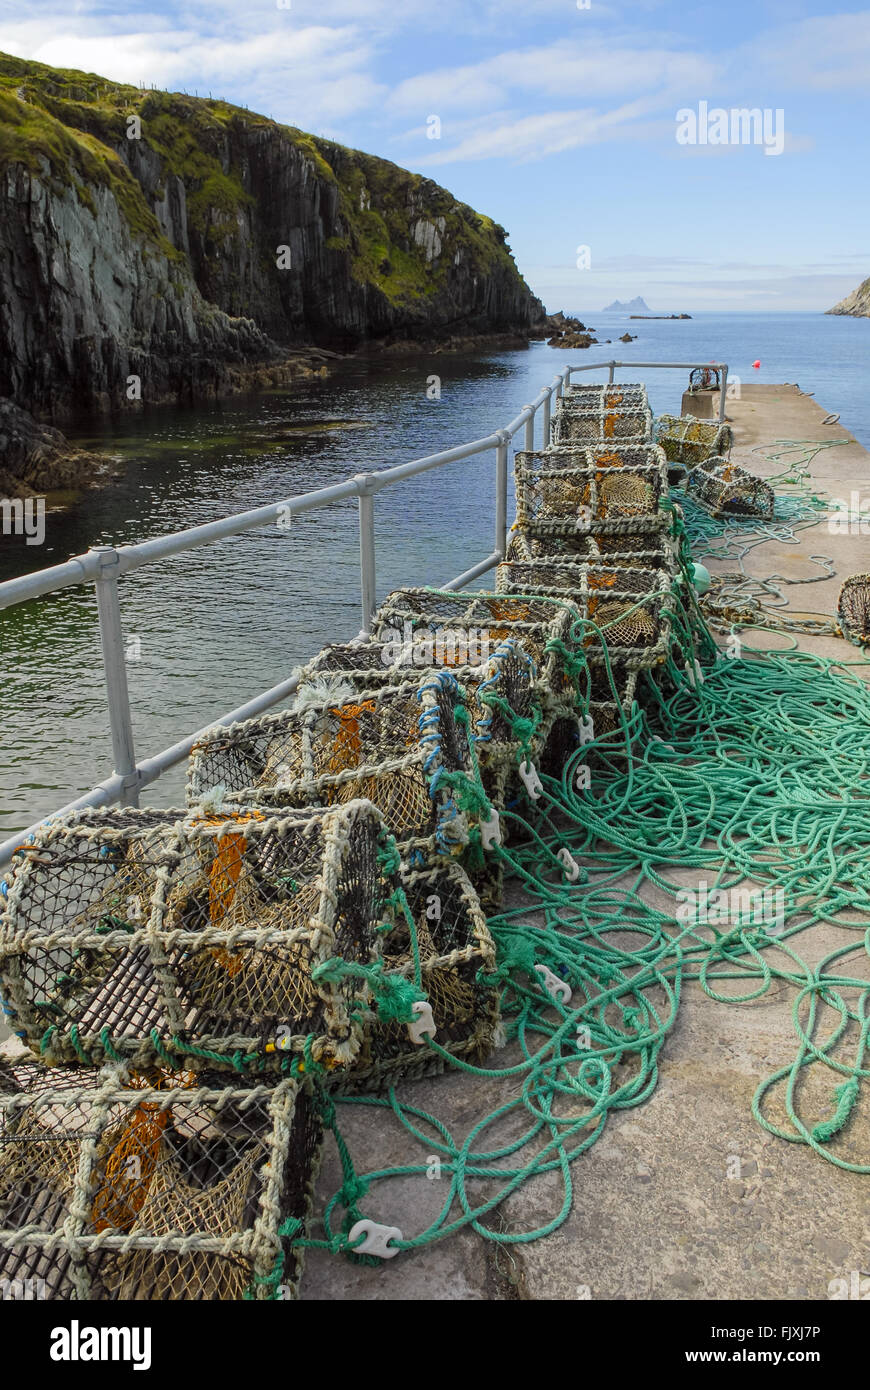 Des paniers de casiers à homards sur une rampe en Irlande Photo Stock -  Alamy